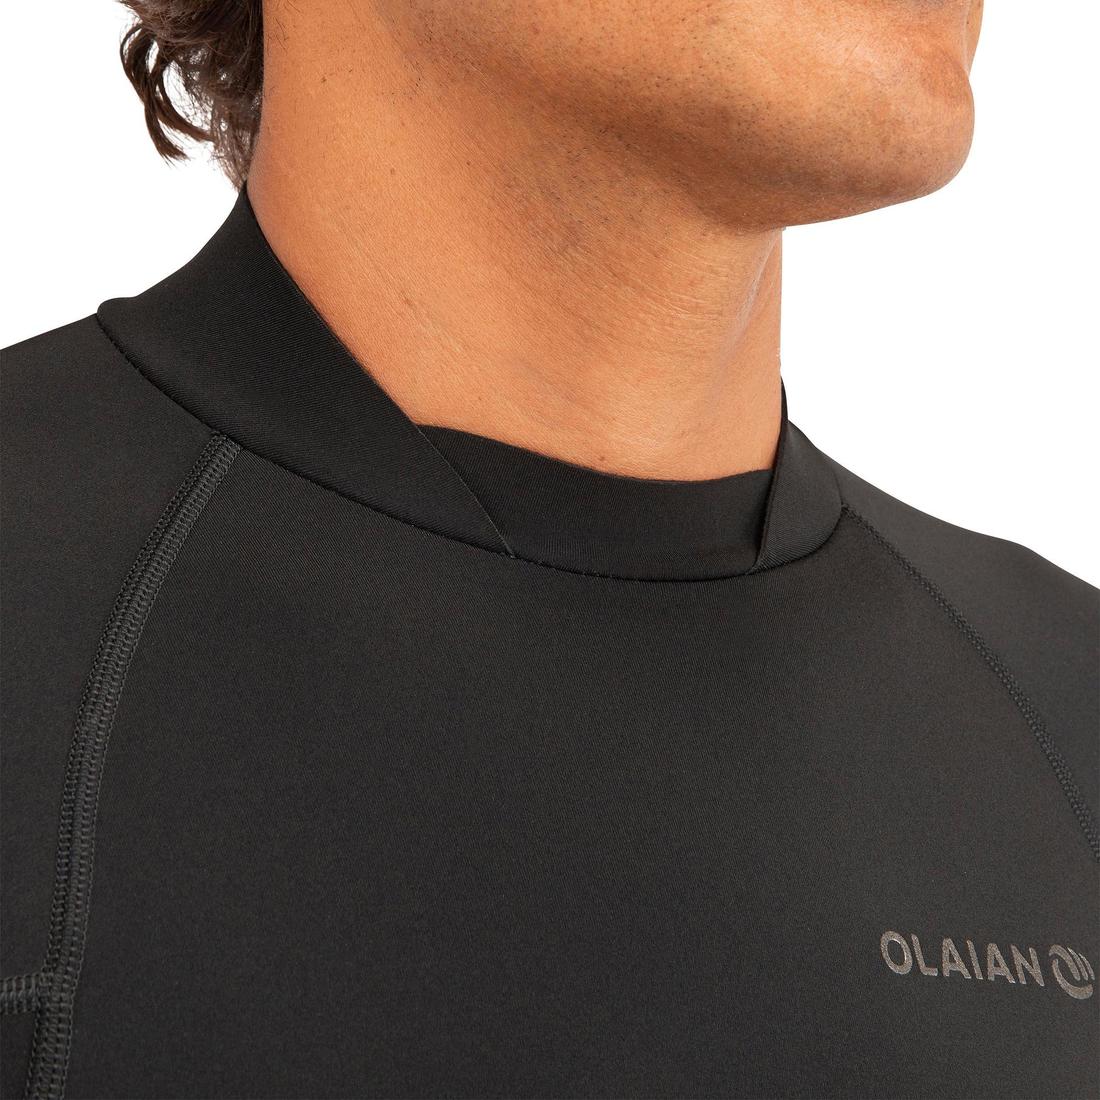 OLAIAN (オライアン) サーフィン ウェットスーツトップス 900 1.5mm メンズ